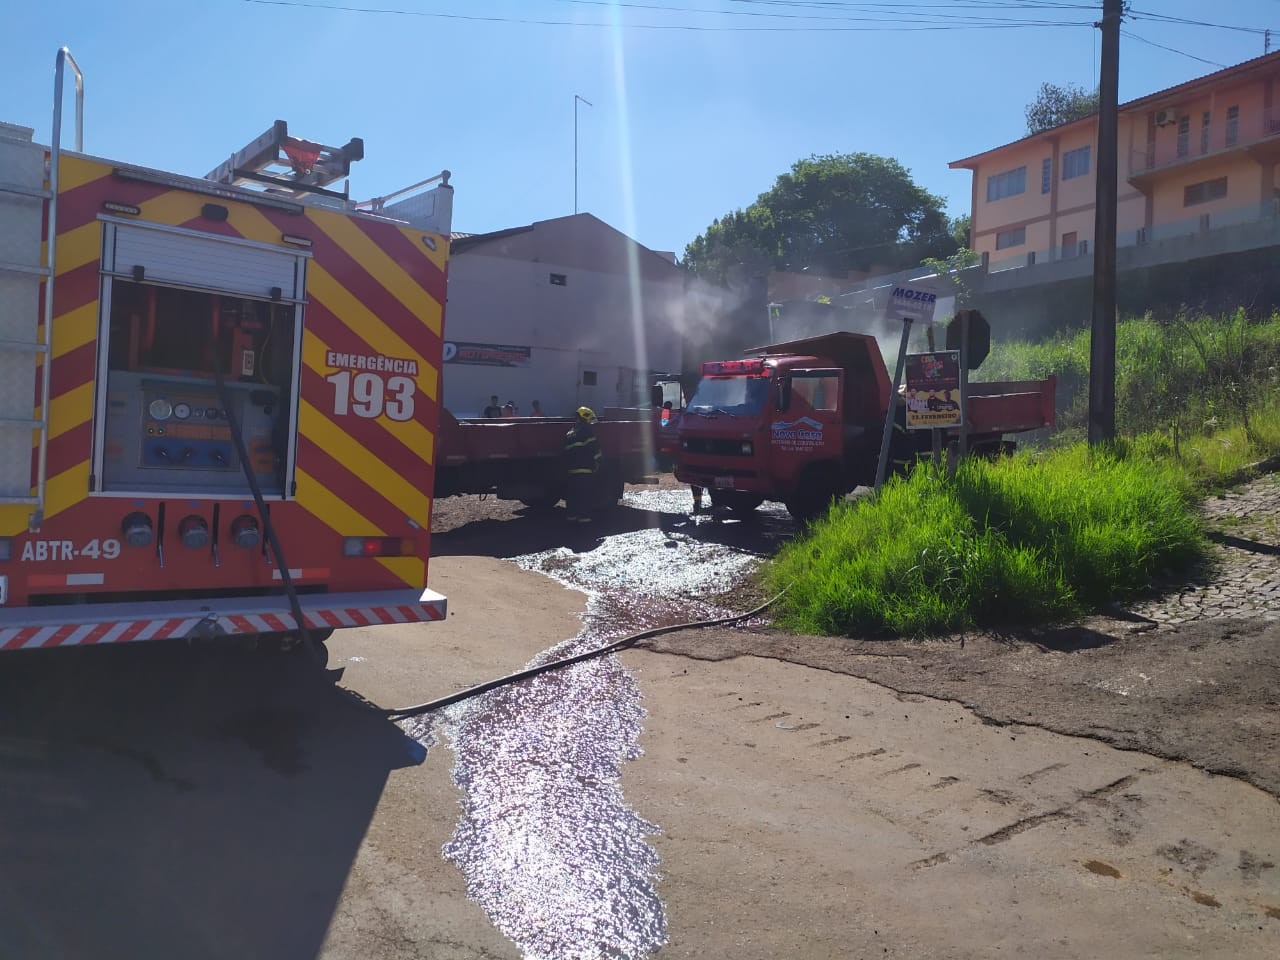 Bombeiros atendem ocorrência de Incêndio em caminhão no centro de Cunha Porã